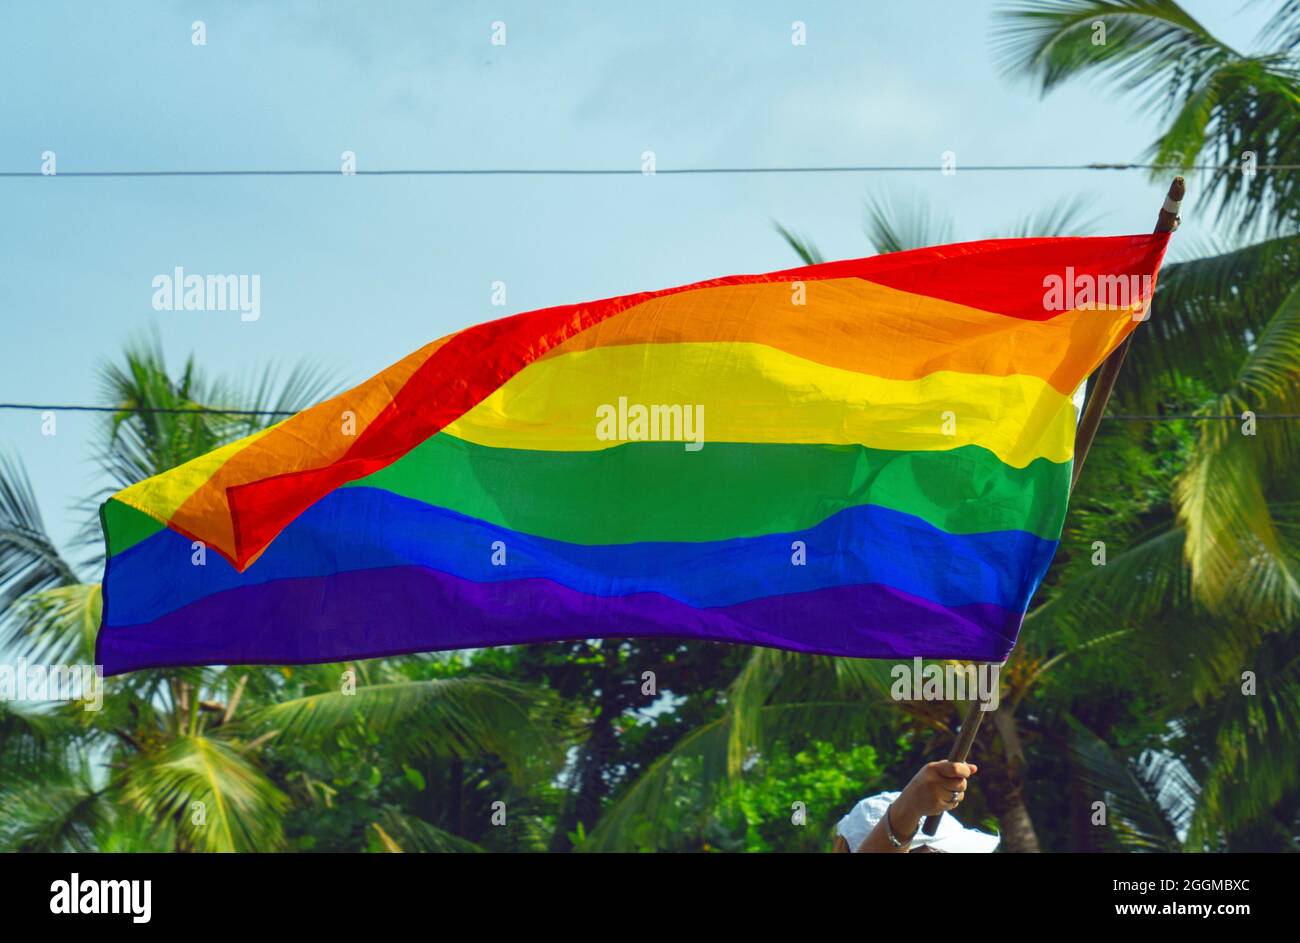 Eine Hand hält eine große Regenbogenfahne zur Unterstützung der LGBTQ-Bewegung, im Hintergrund grüne Bäume. Stockfoto